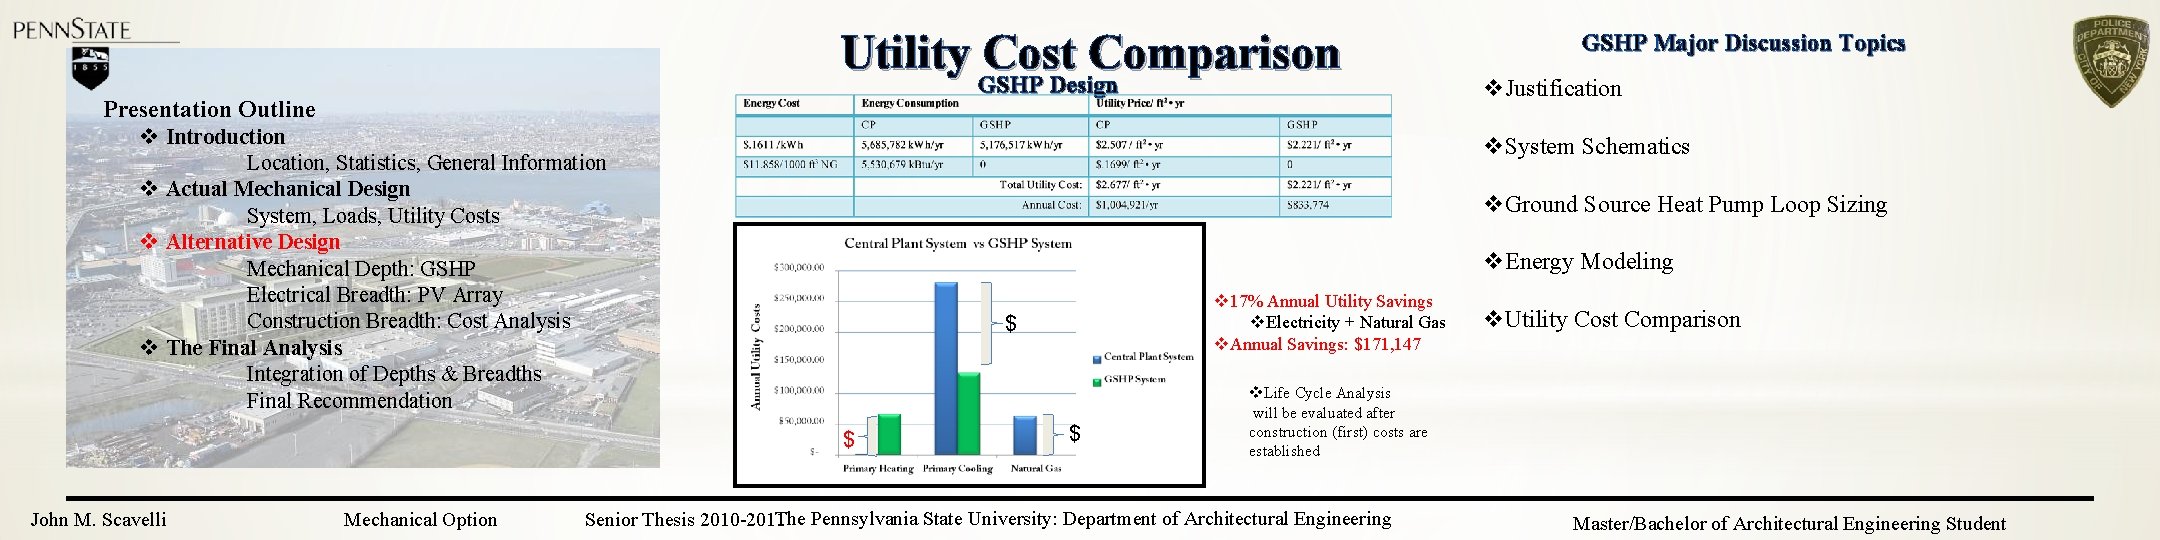 Utility Cost Comparison GSHP Design Presentation Outline v Introduction Location, Statistics, General Information v